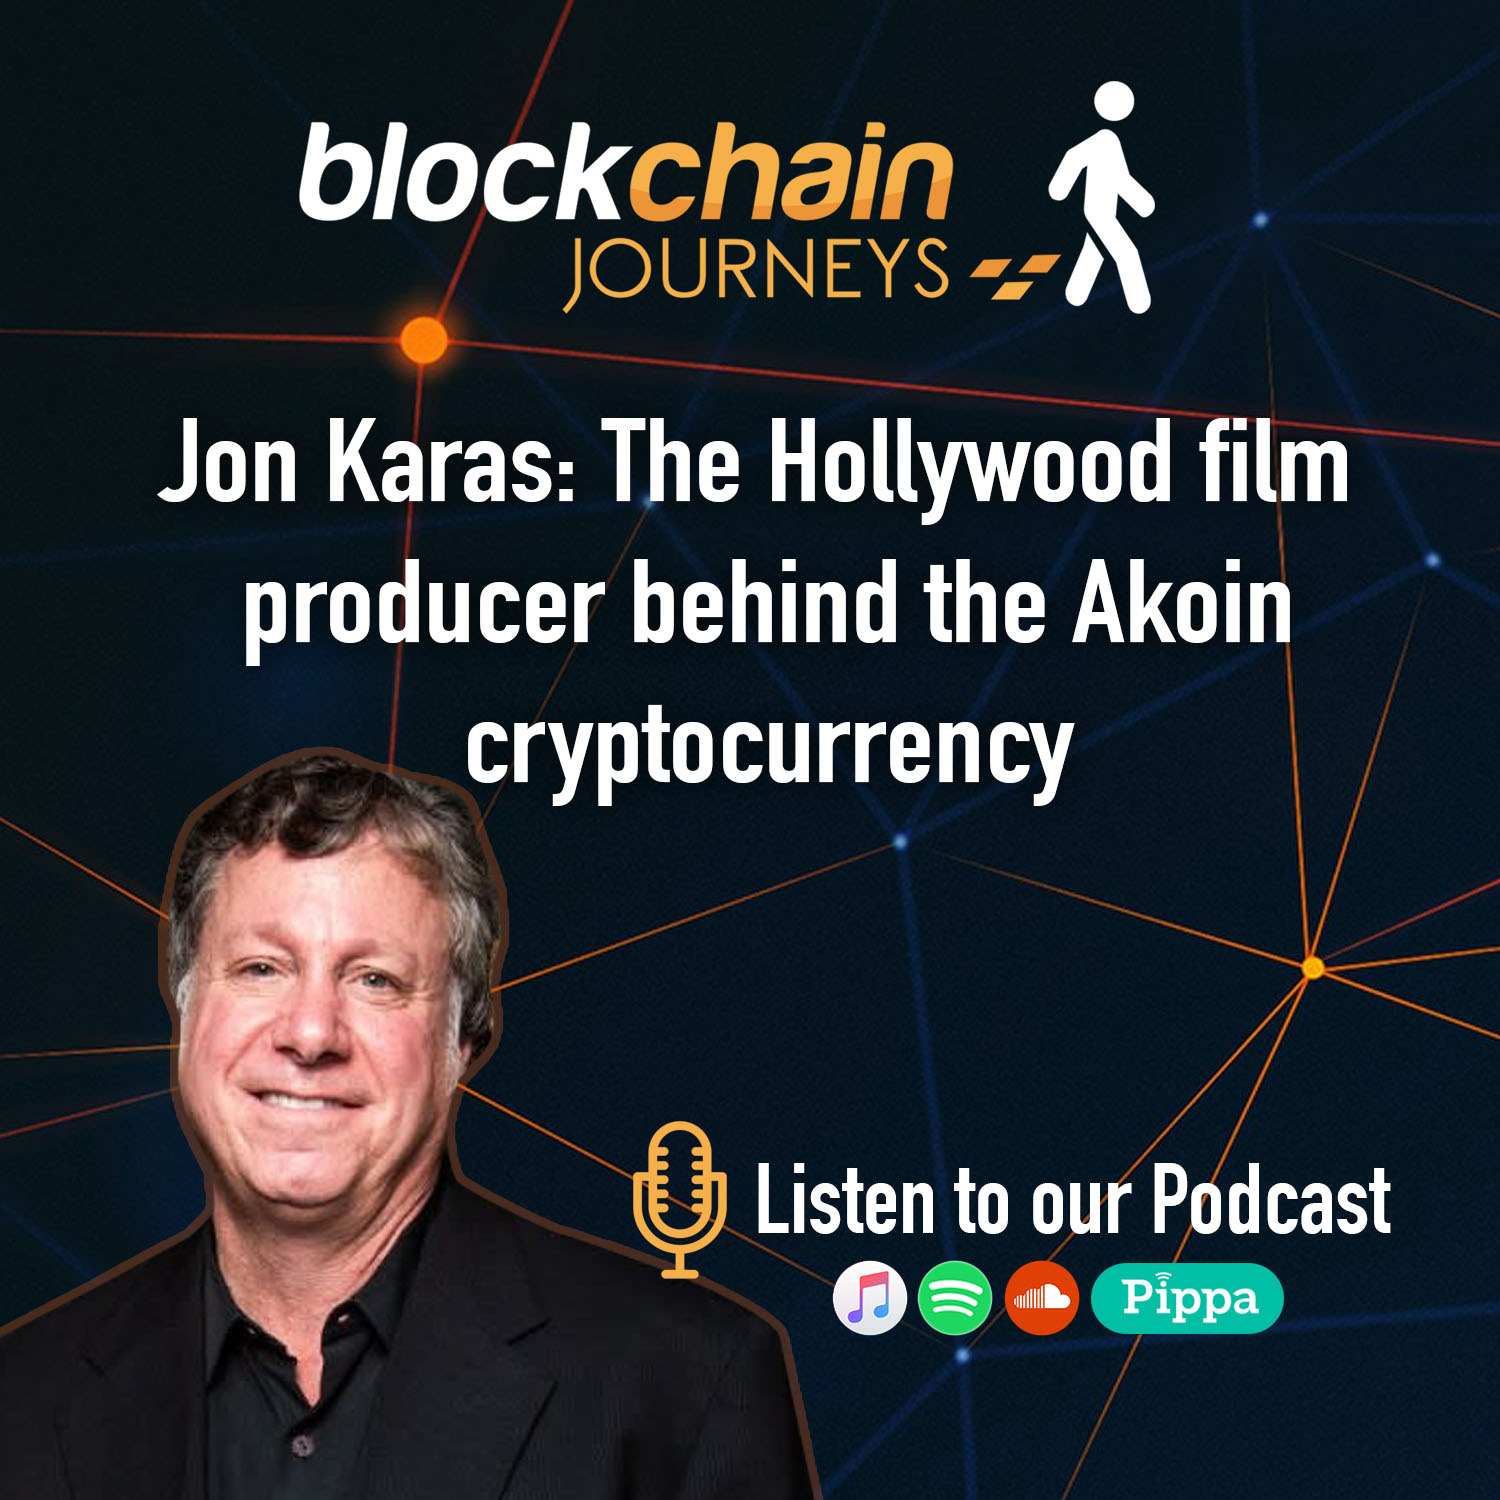 Jon Karas: The Hollywood producer behind the Akoin crypto